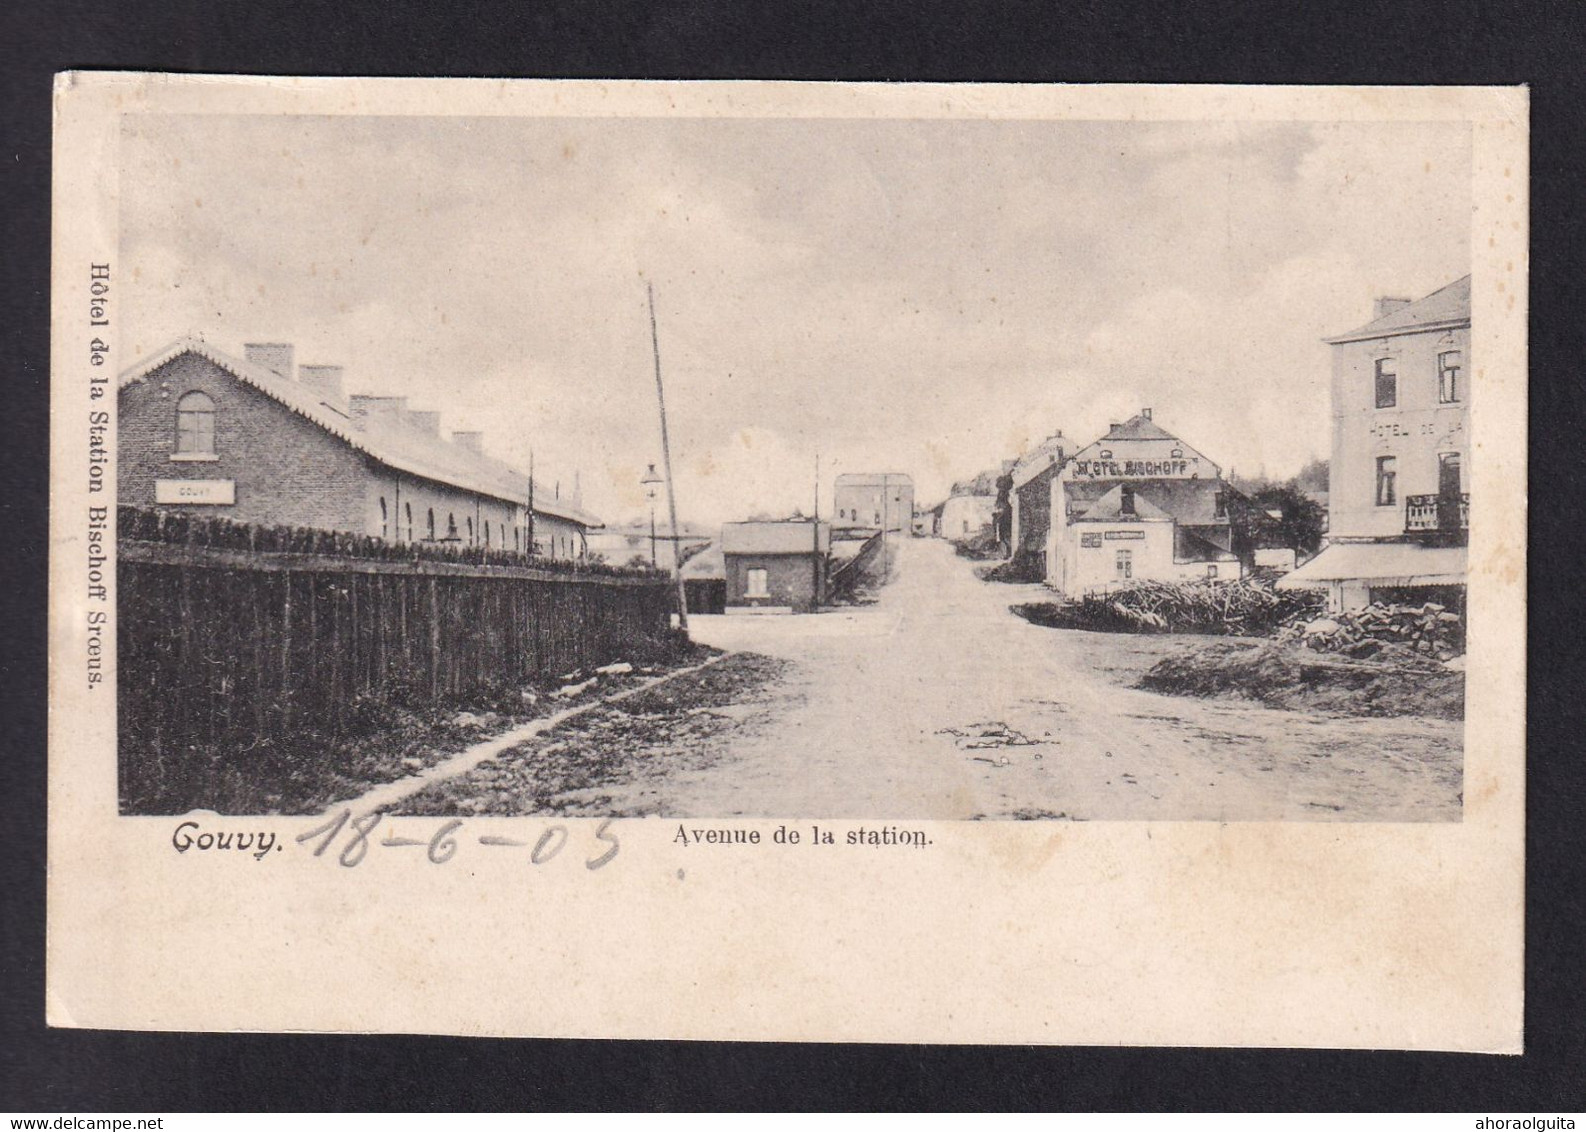 DDAA 421 - Carte-Vue De GOUVY - Avenue De La Station - Circulée GOUVY 1905 - Editeur Bisschott Schroeus - Gouvy